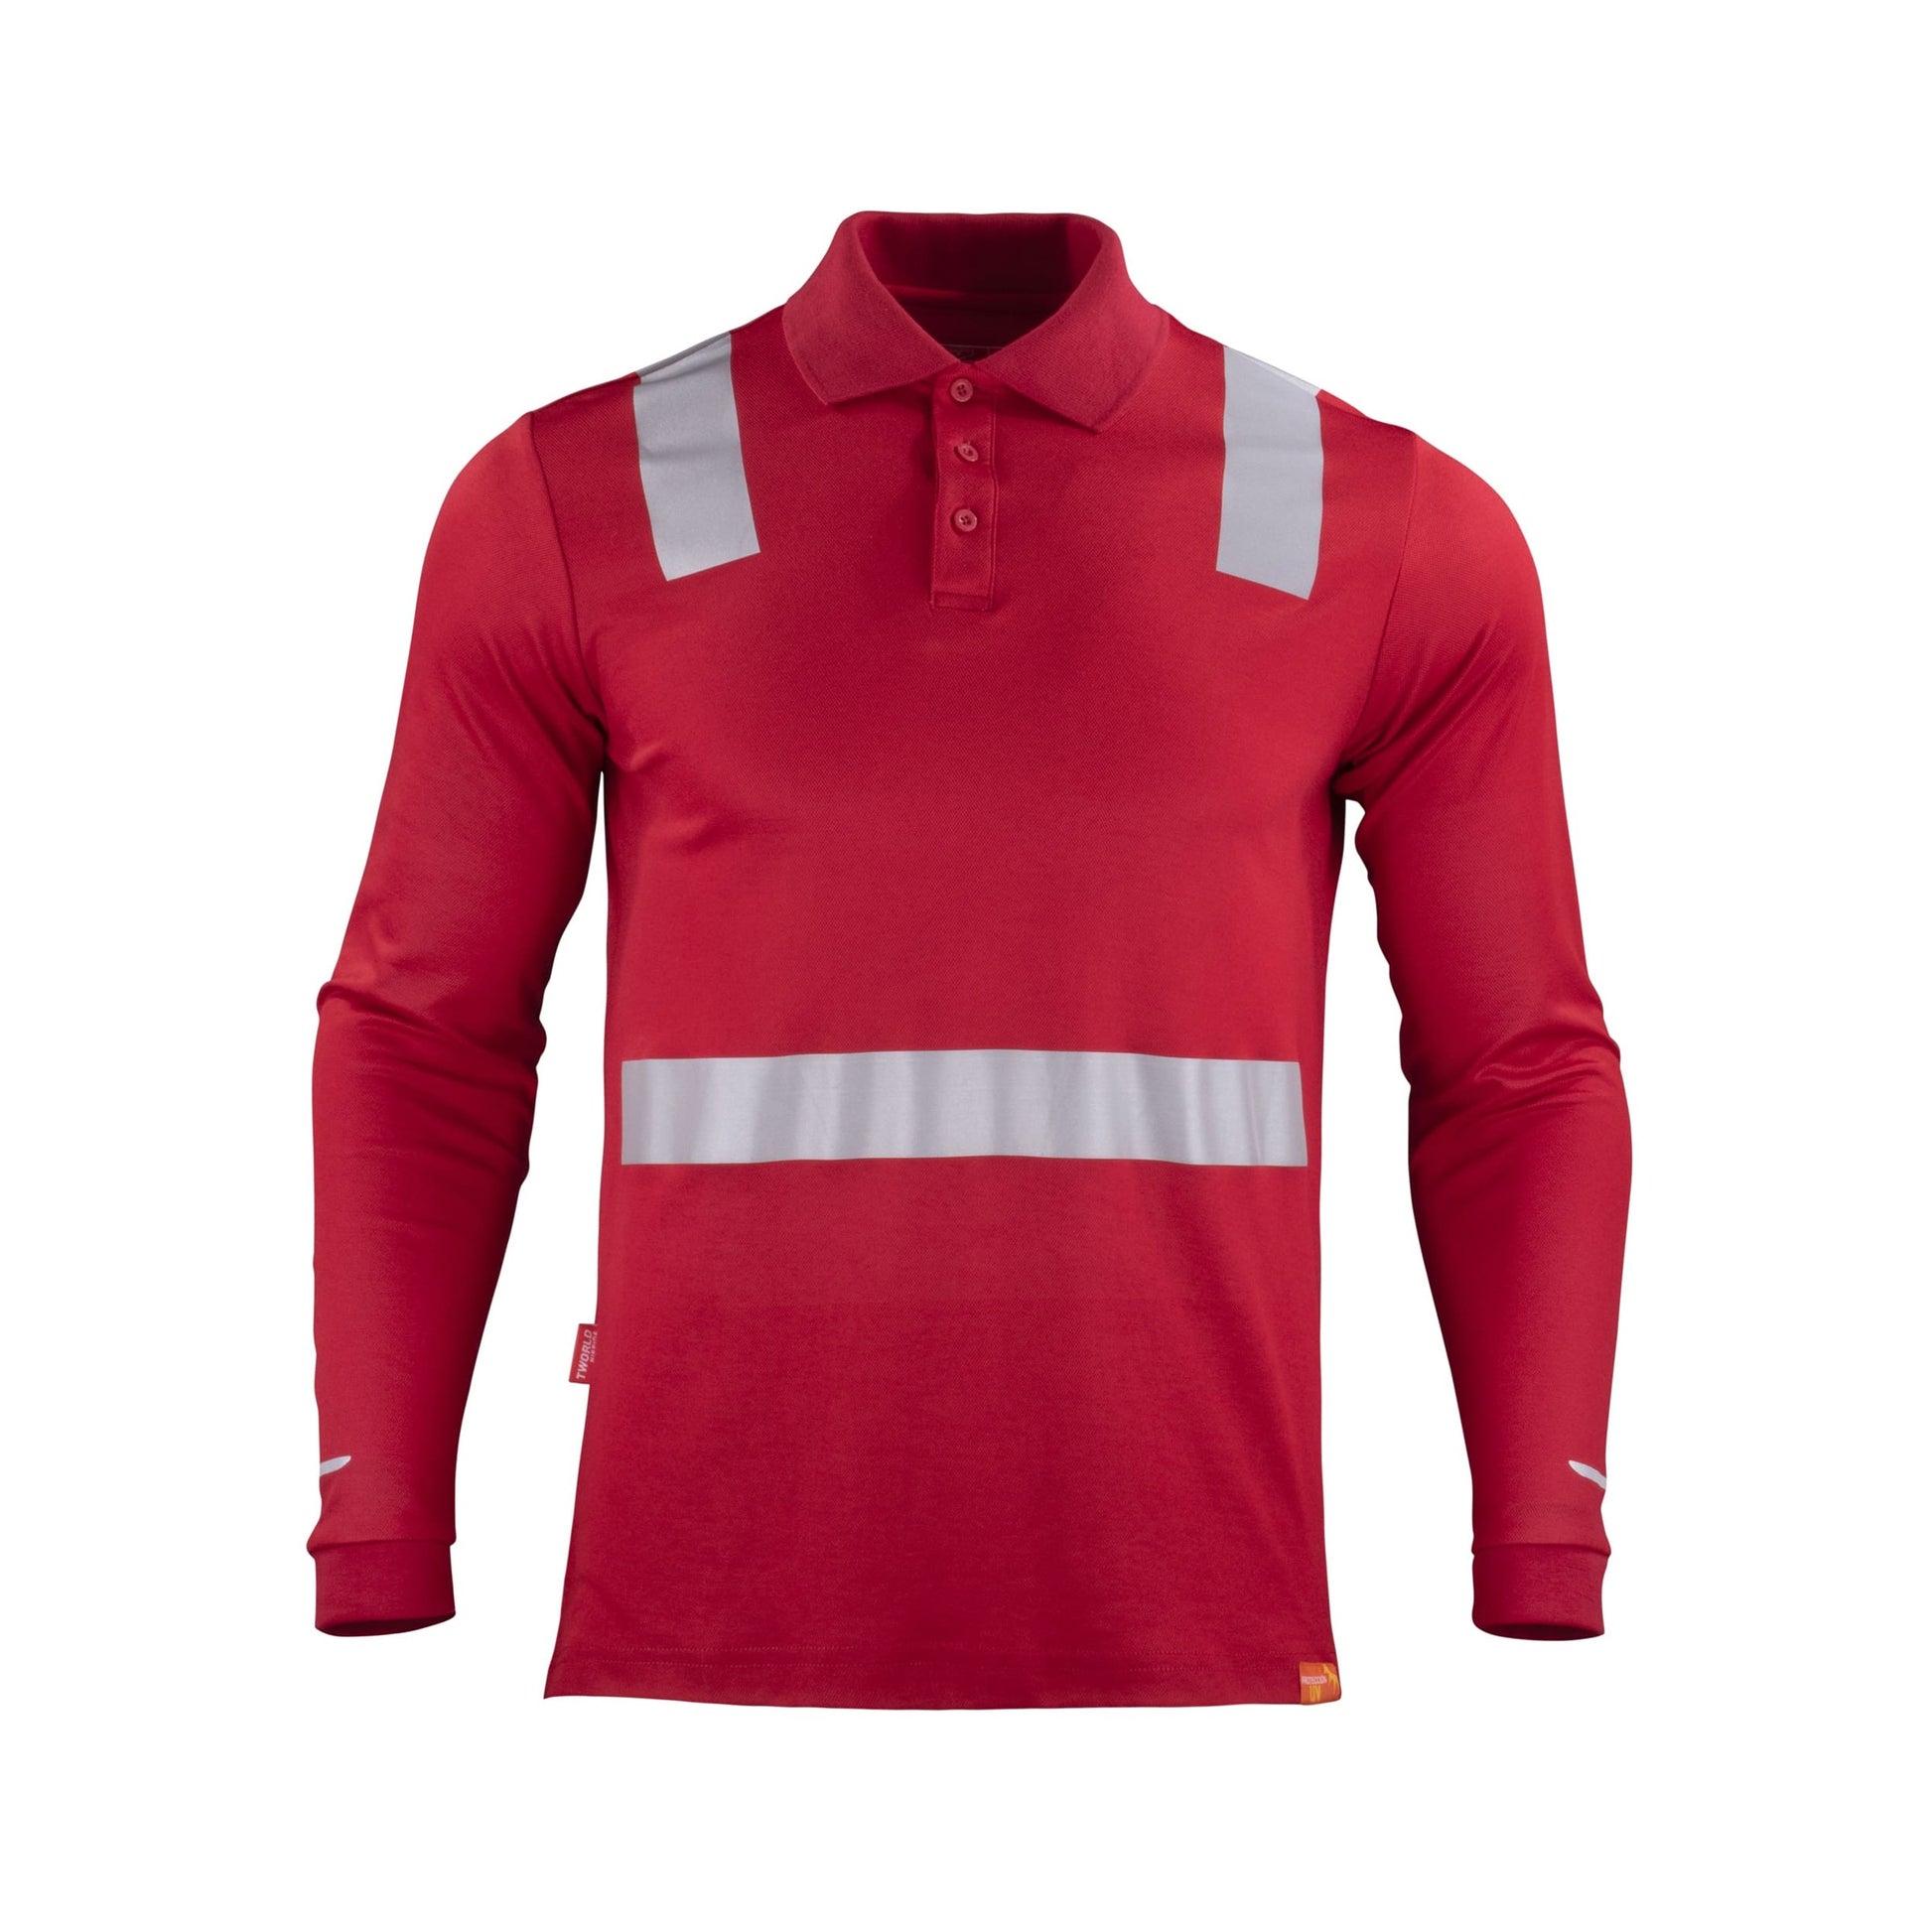 Polera roja con cuello camisero y cinta reflectante de manga larga, ideal para entornos laborales que requieren alta visibilidad y estilo - TEAMGRAFF